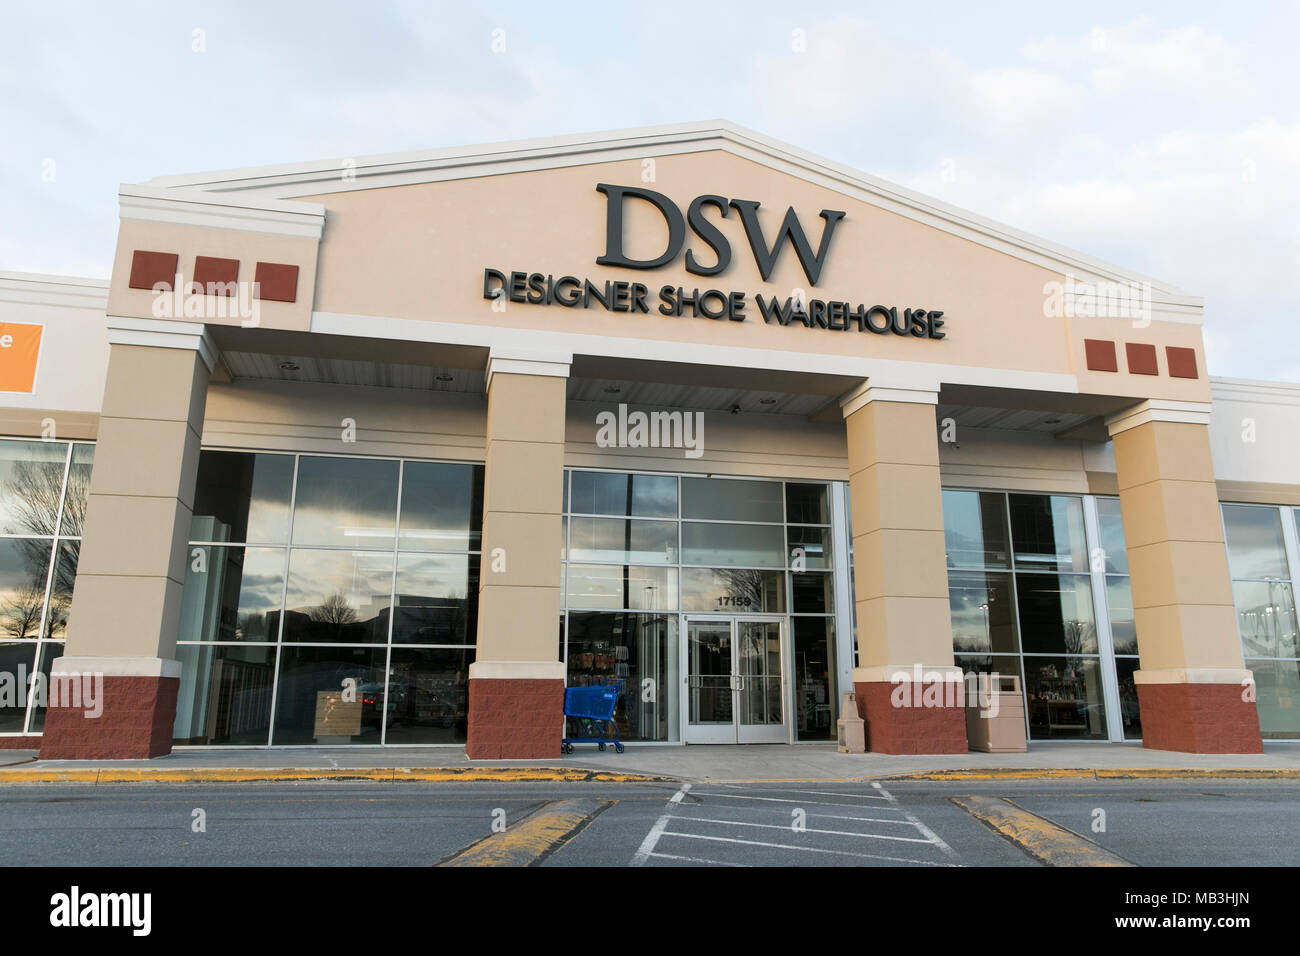 Un diseñador (DSW Shoe Warehouse) El logotipo visto en una tienda minorista frente en Hagerstown, Maryland, el 5 de abril de 2018. Foto de stock